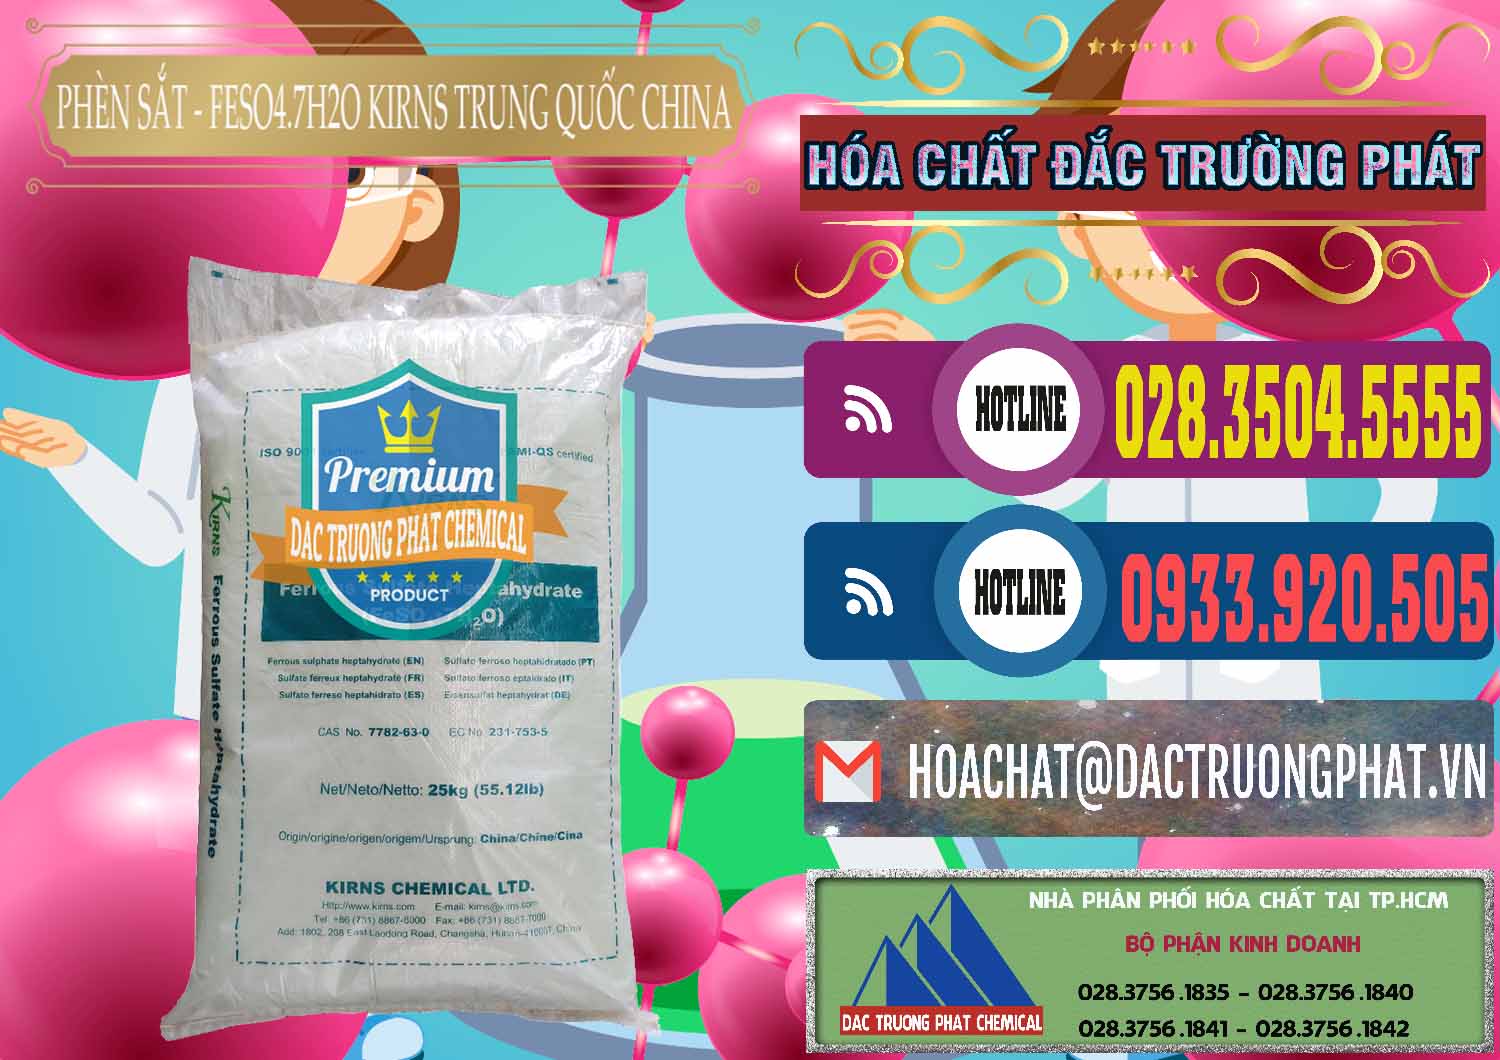 Nơi bán _ cung ứng Phèn Sắt - FeSO4.7H2O 98% Kirns Trung Quốc China - 0117 - Cty chuyên phân phối _ cung ứng hóa chất tại TP.HCM - muabanhoachat.com.vn